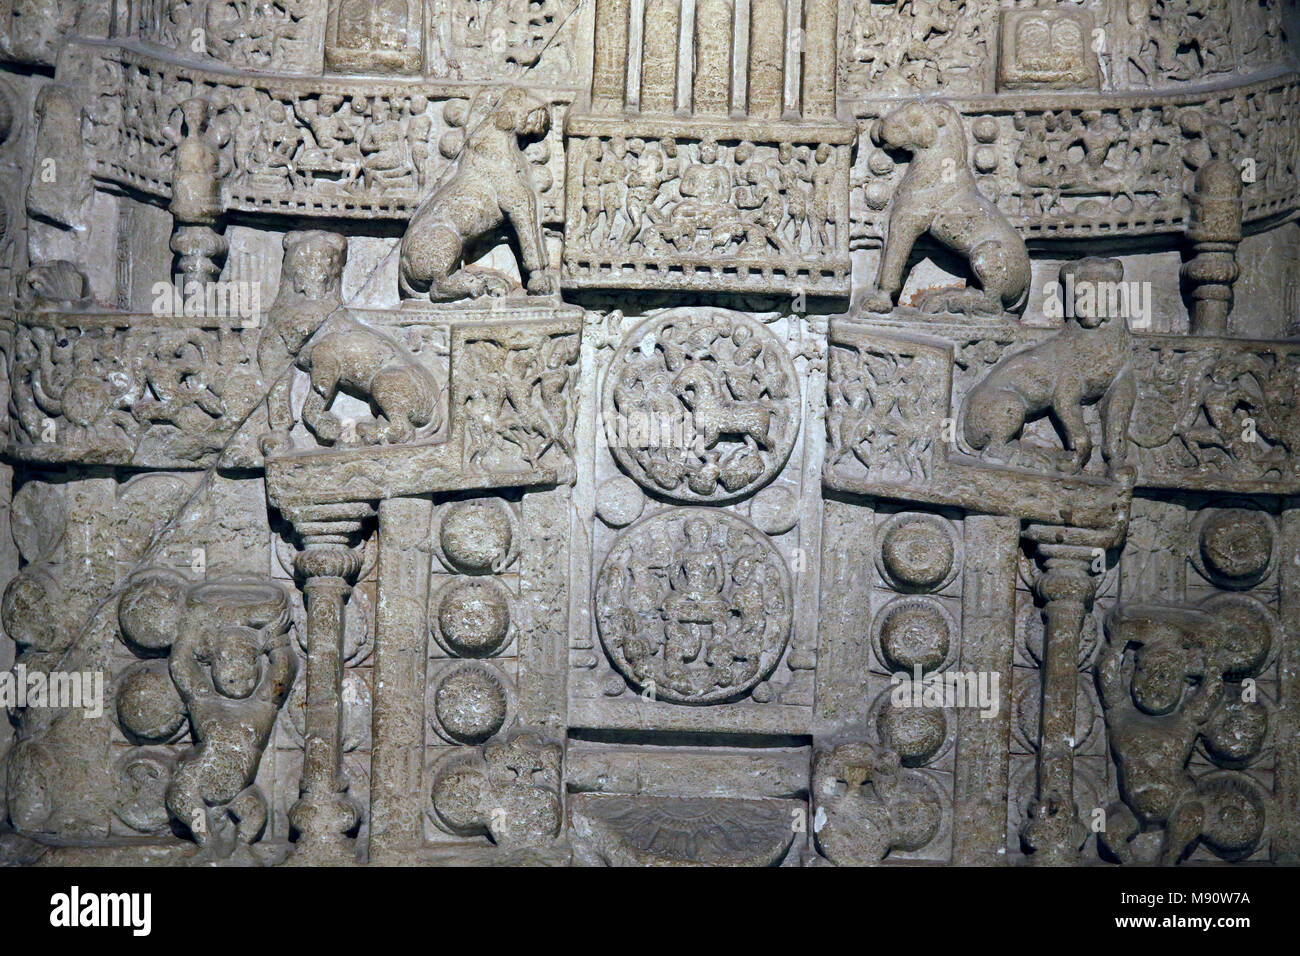 National Museum von Indien, Delhi. Amaravathi stupa Abbildung. Gehäuse Scheibe. Satavahana, 1st-2nd Jahrhundert Amaravathi, Andhra Pradesh. Geschnittenem Kalkstein Stockfoto